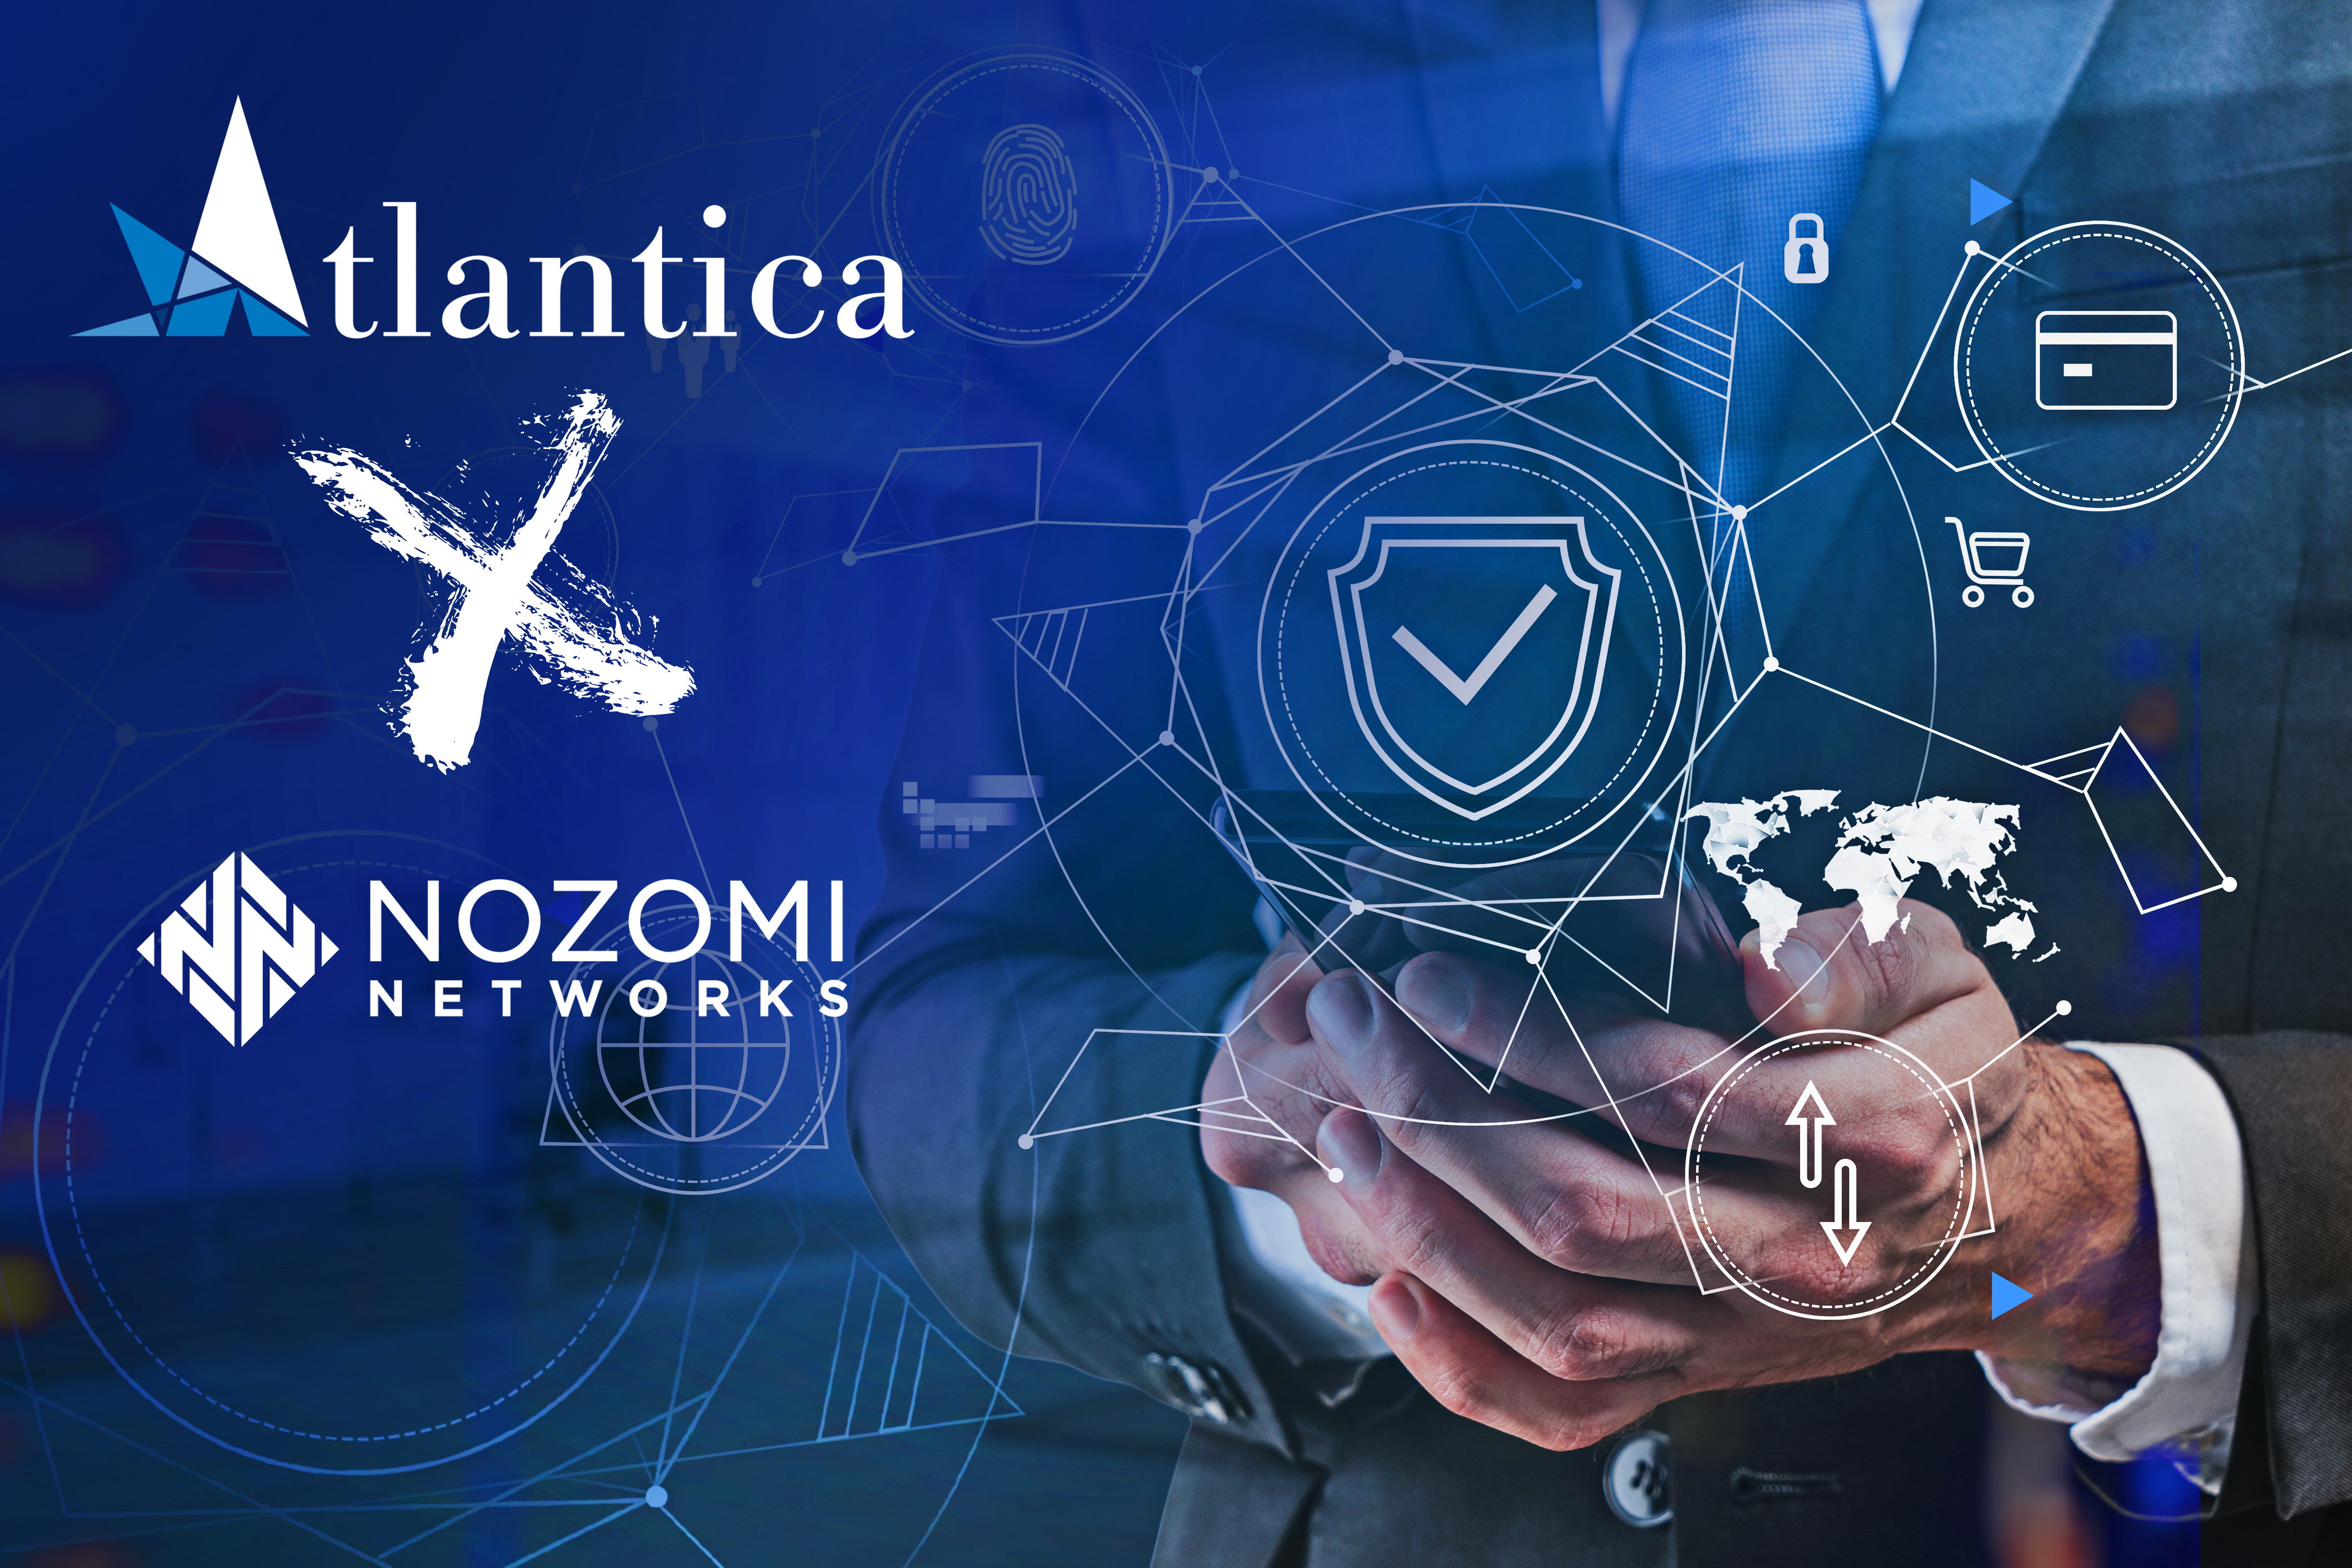 ATLANTICA DIGITAL SPA e Nozomi Networks annunciano la loro partnership dedicata al mondo #OT/ #IoT.